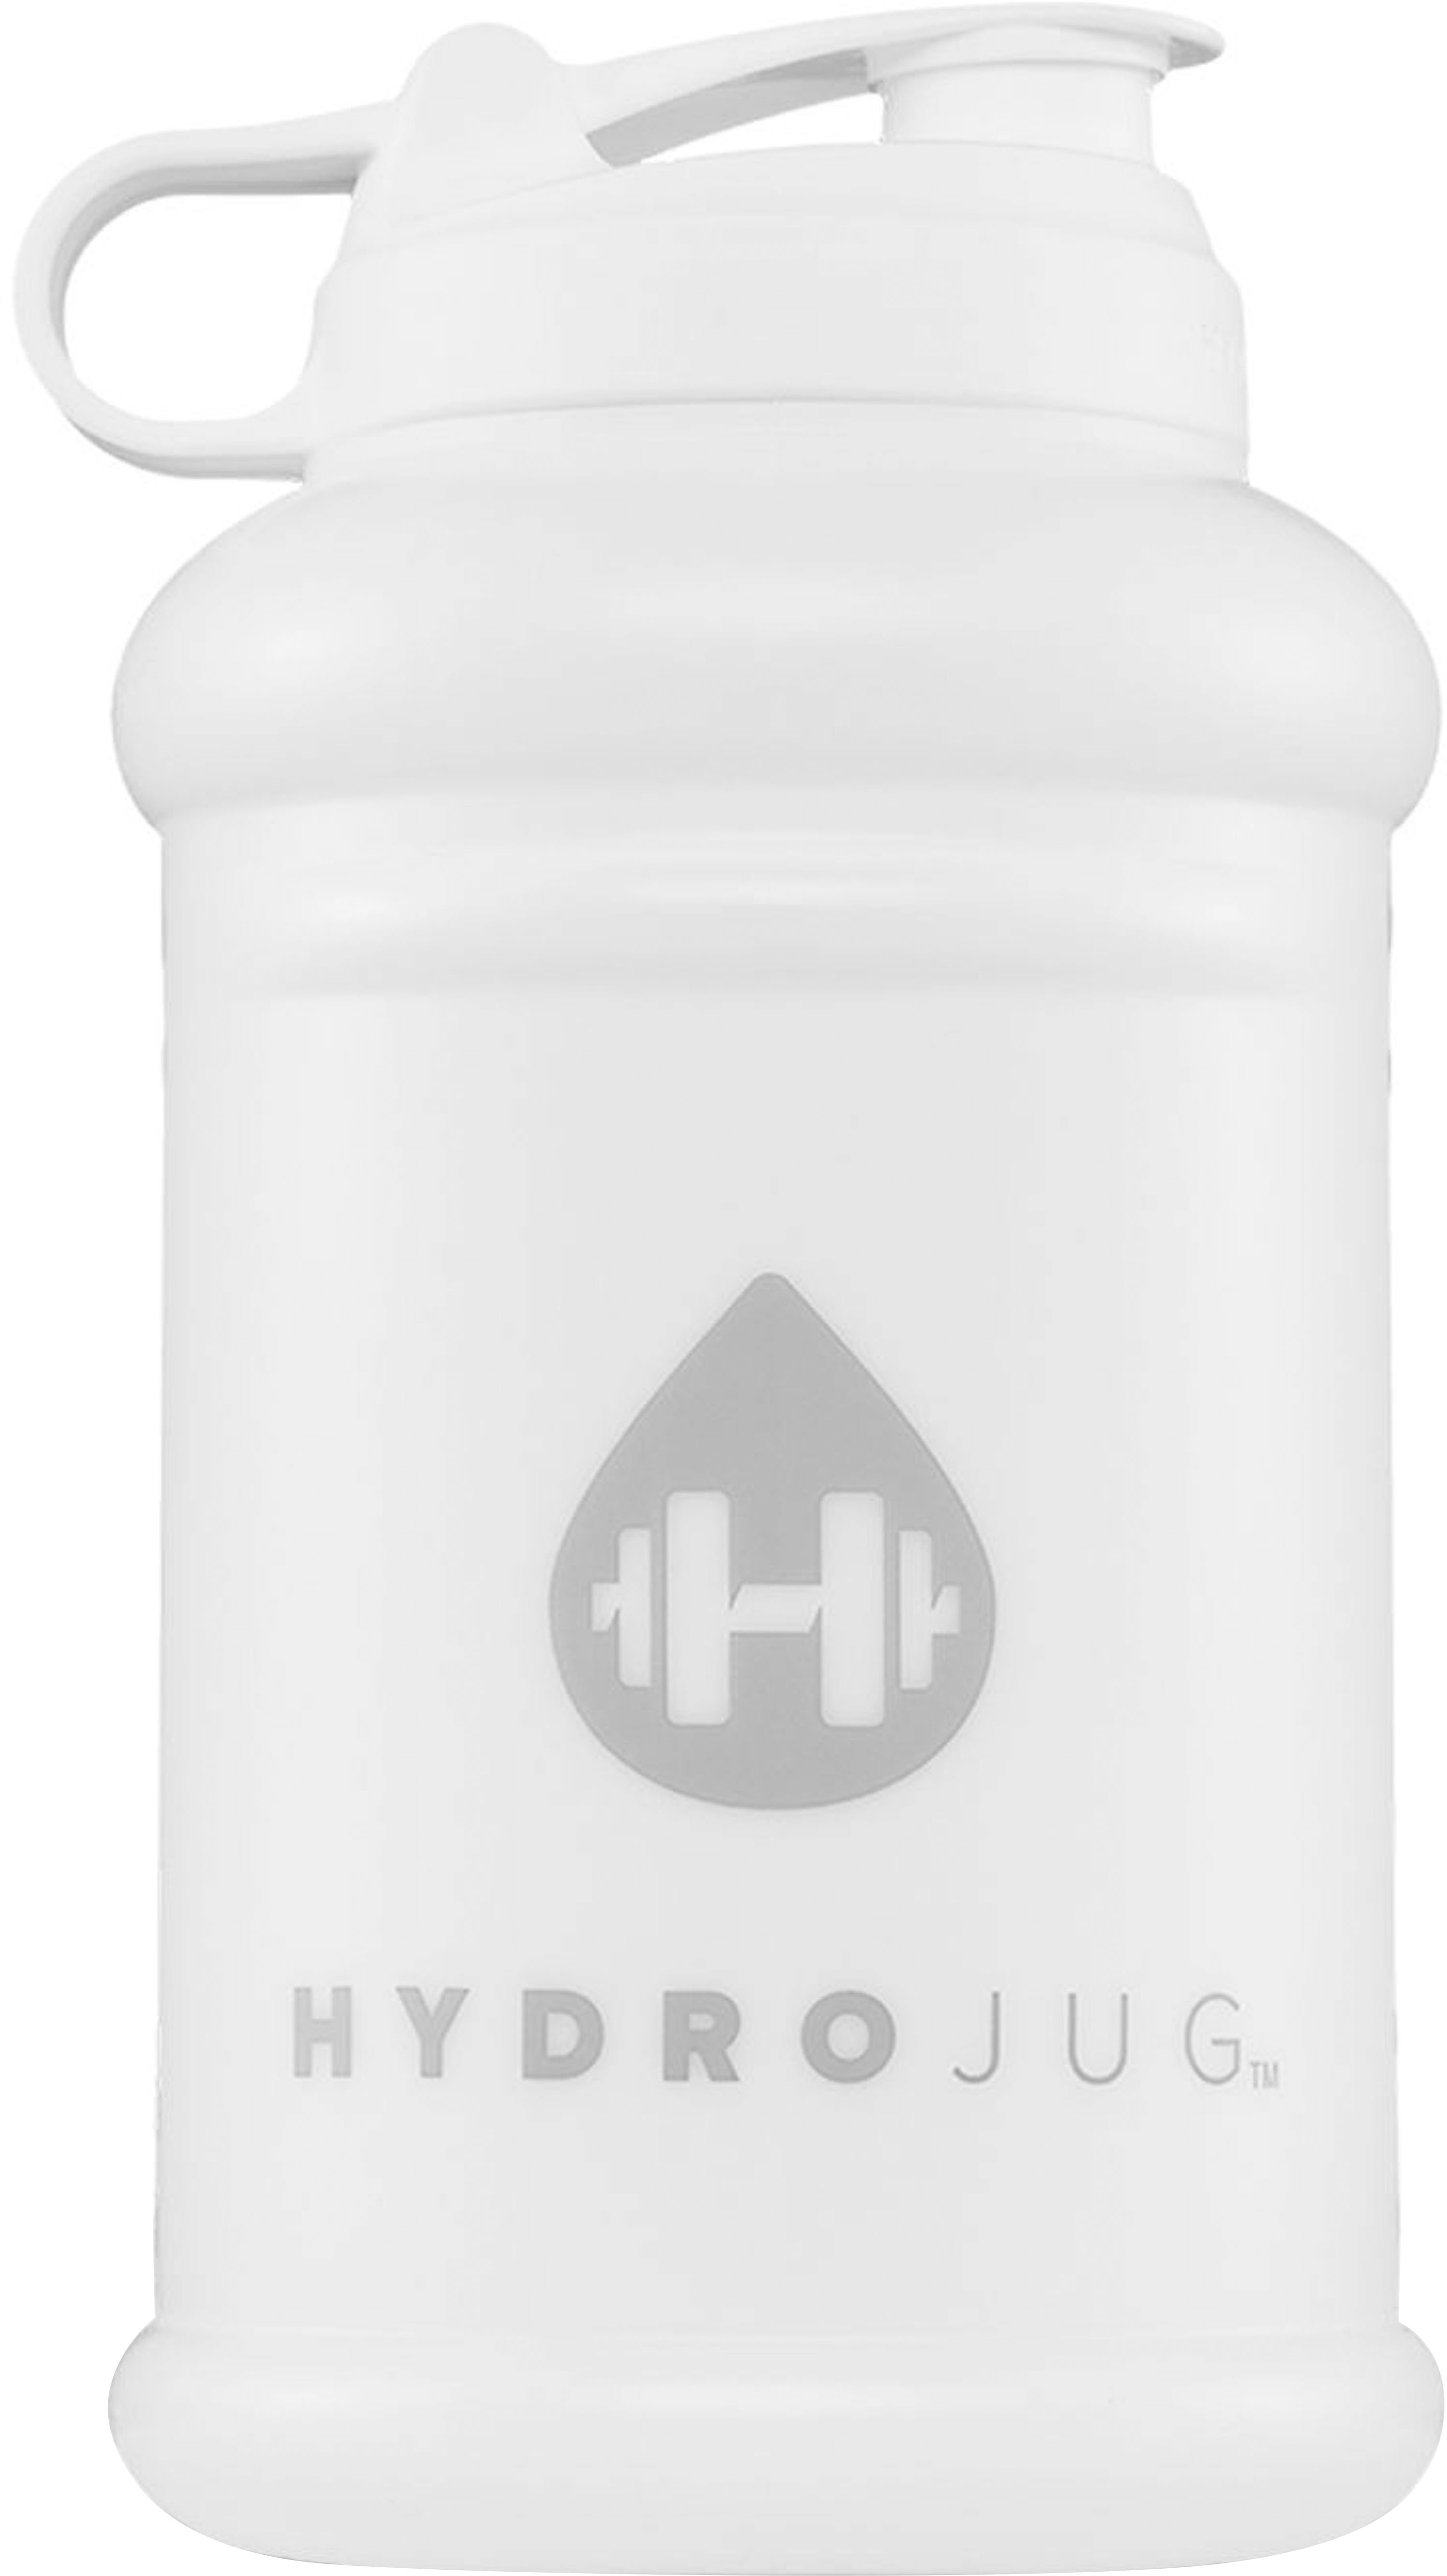 Hydrojug Pro White